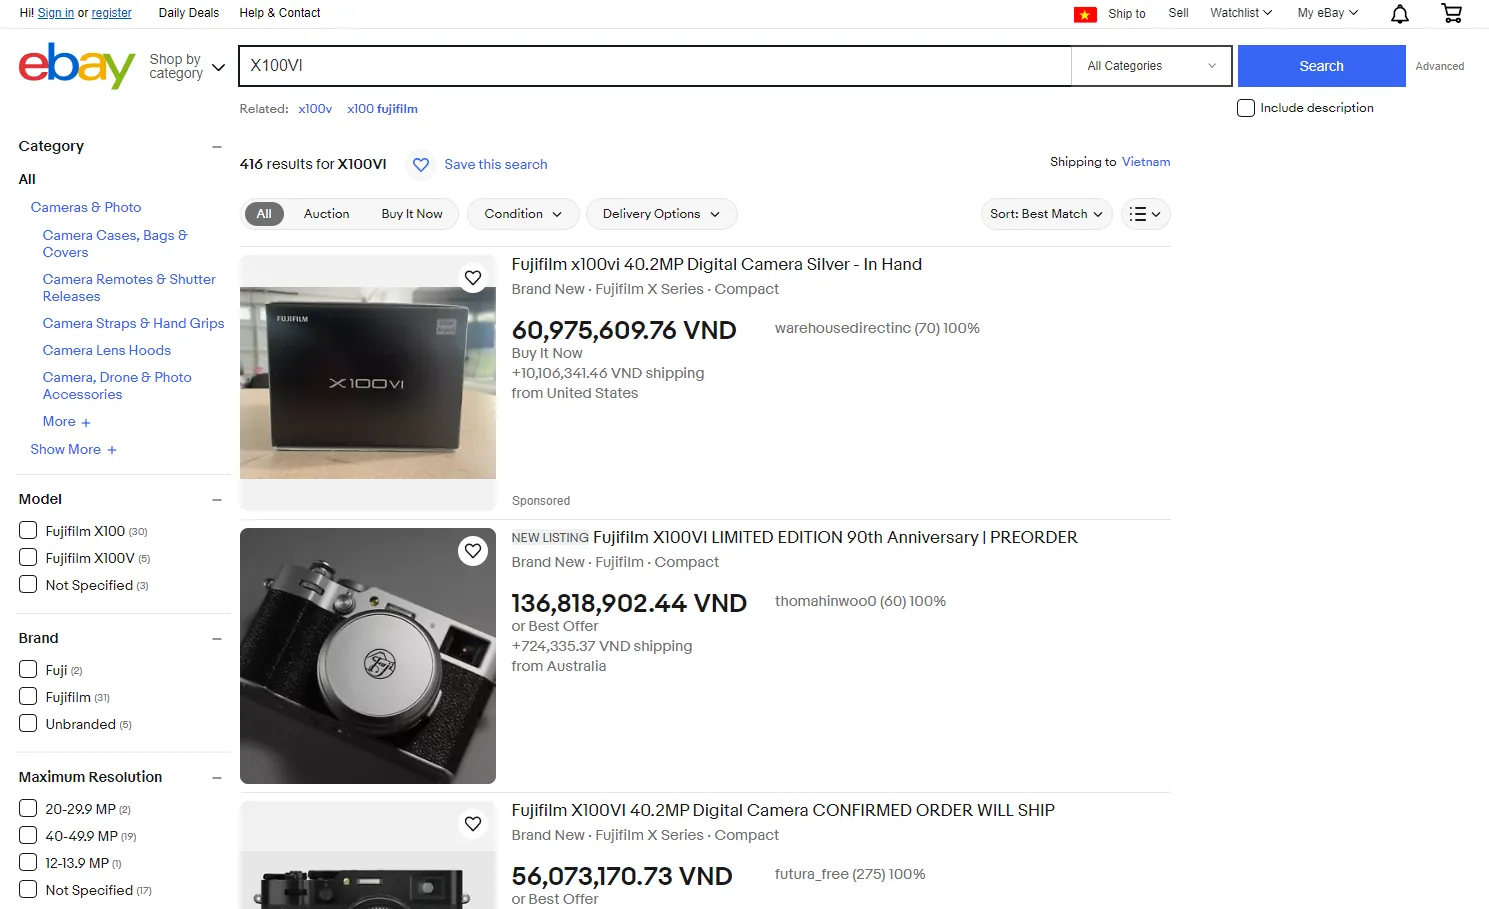 Nhu cầu cao khiến Fujifilm X100VI bị hét giá cao gấp nhiều lần trên eBay